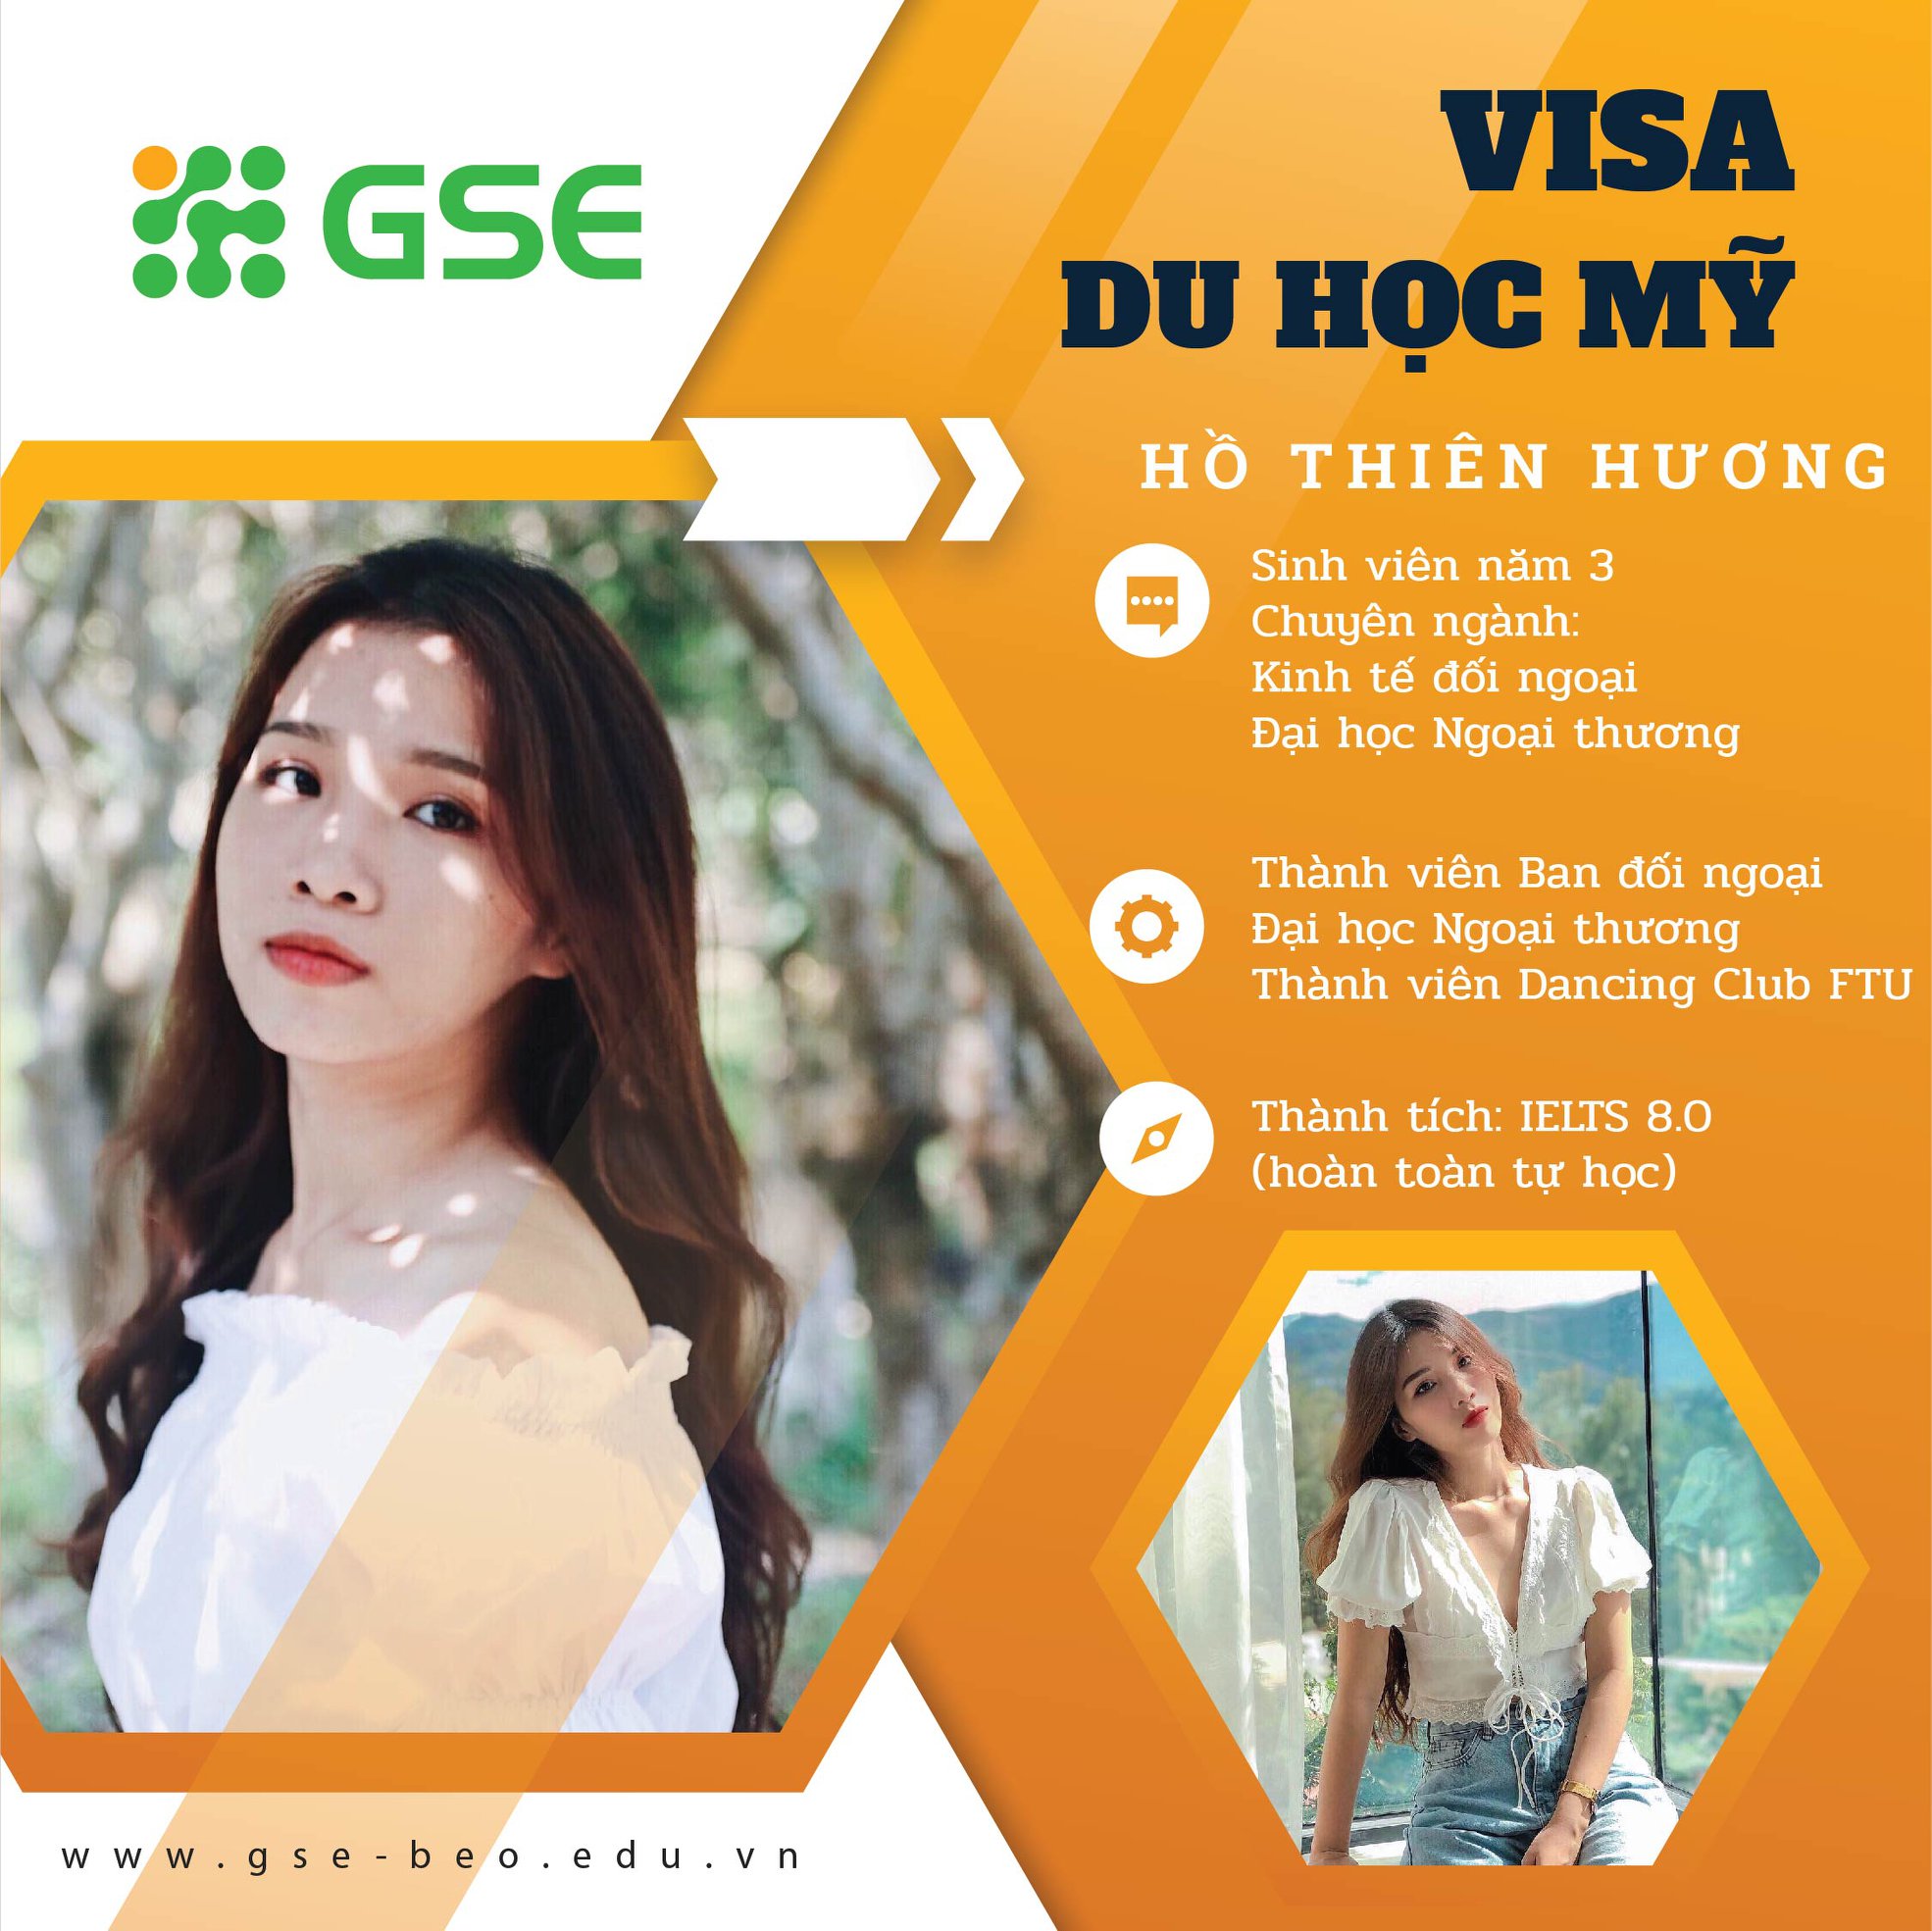 Visa my ho huong - Visa du học Mỹ - Hồ Thiên Hương